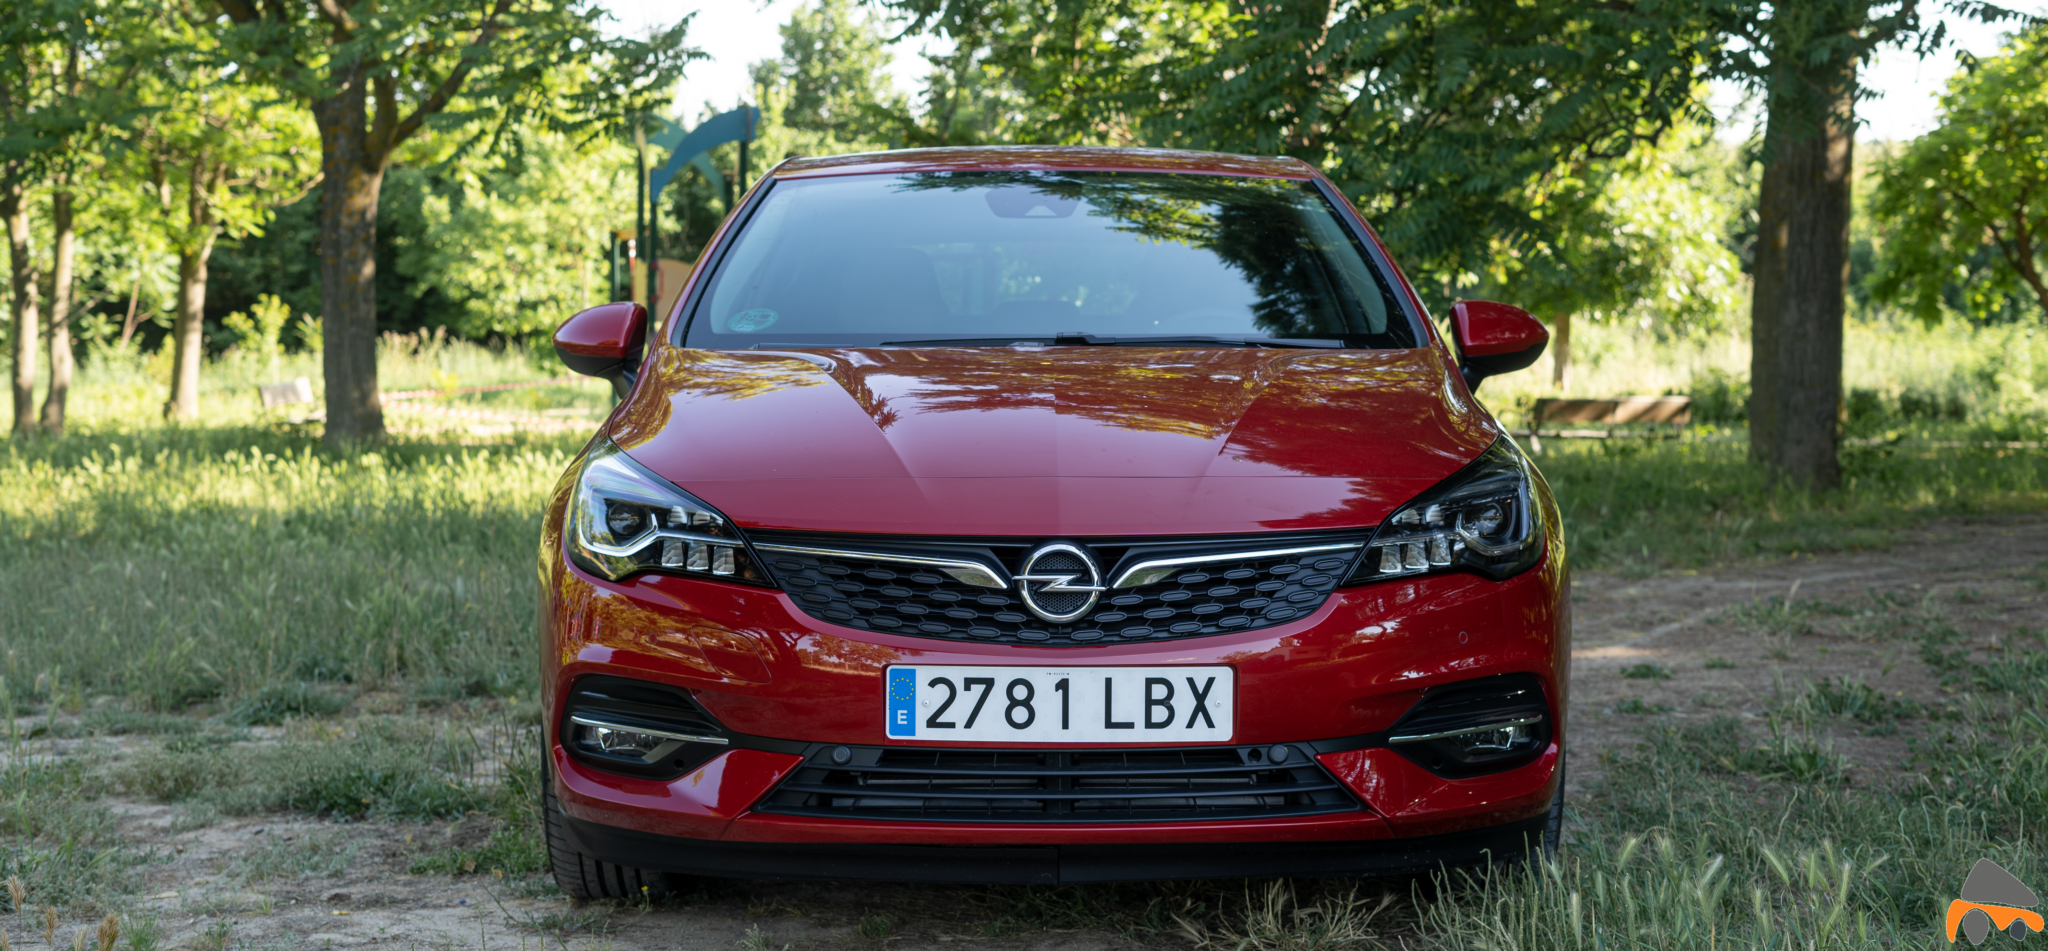 Frontal Opel Astra 2020 145 CV - Opel Astra 2020 1.2 Turbo con 145 CV: Una renovación leve, pero muy necesaria